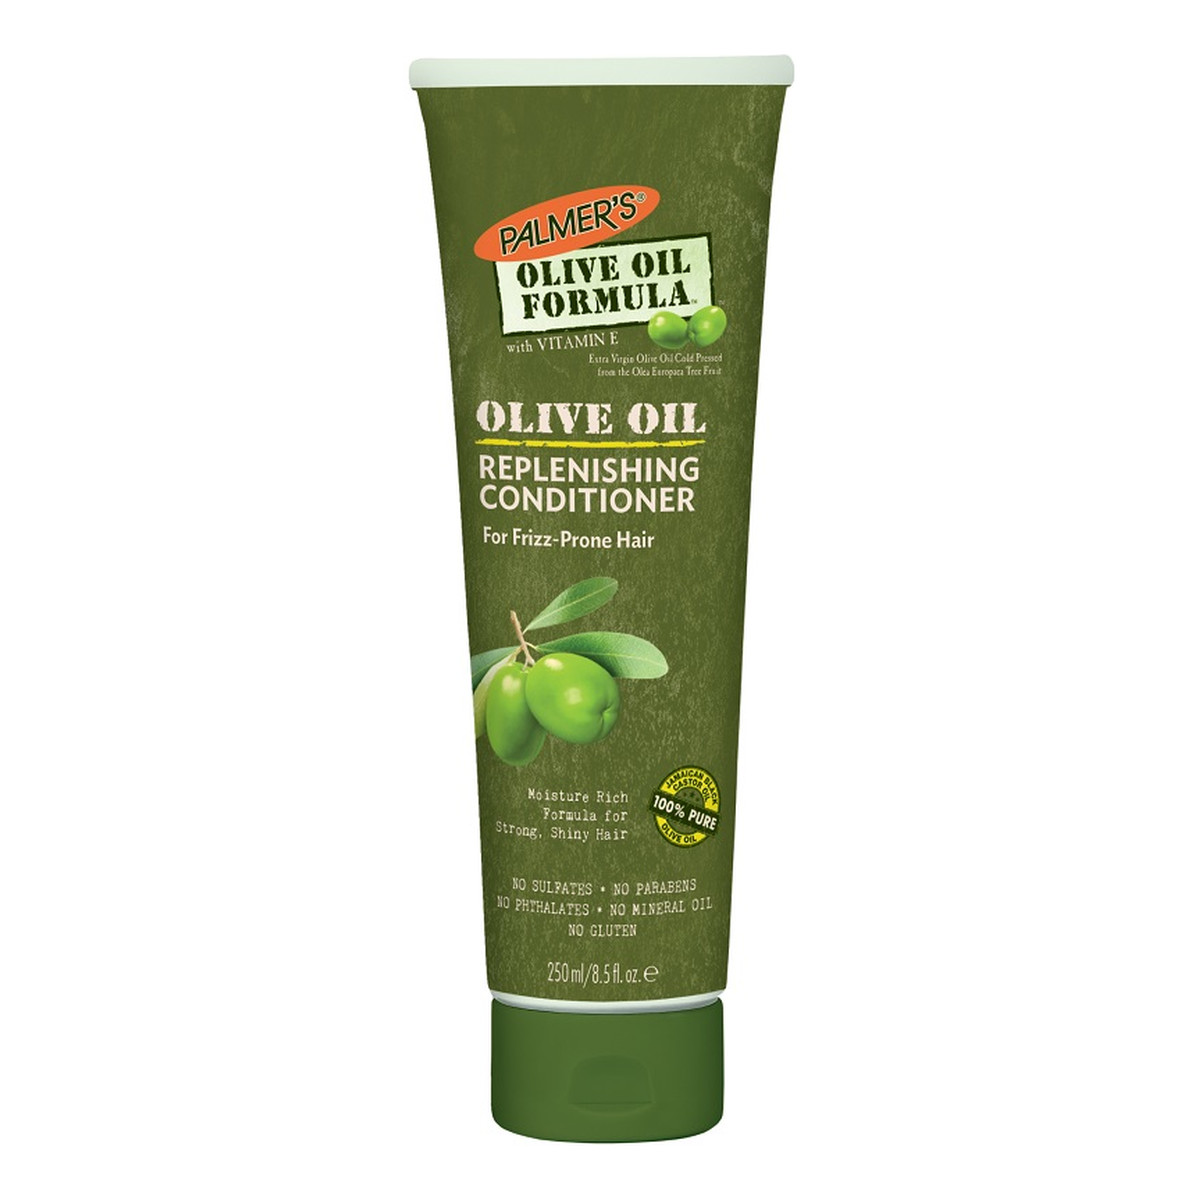 Palmer's Olive oil formula replenishing conditioner odżywka do włosów na bazie olejku z oliwek extra virgin 250ml